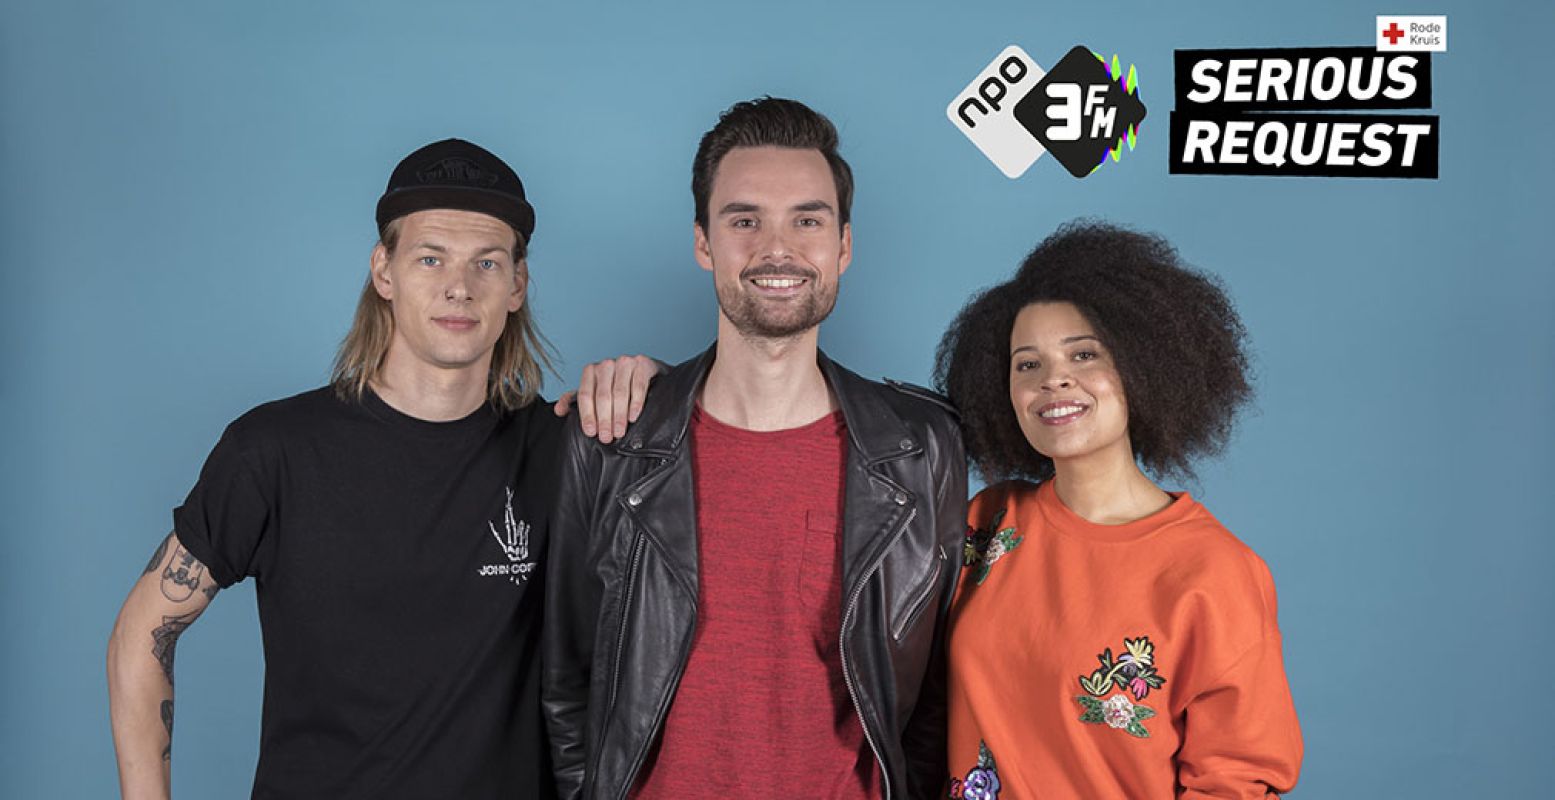 De dj's van 3FM Serious Request 2017: Sander Hoogendoorn, Domien Verschuuren en Angelique Houtveen. Foto: Bullet-Ray / NPO 3FM.